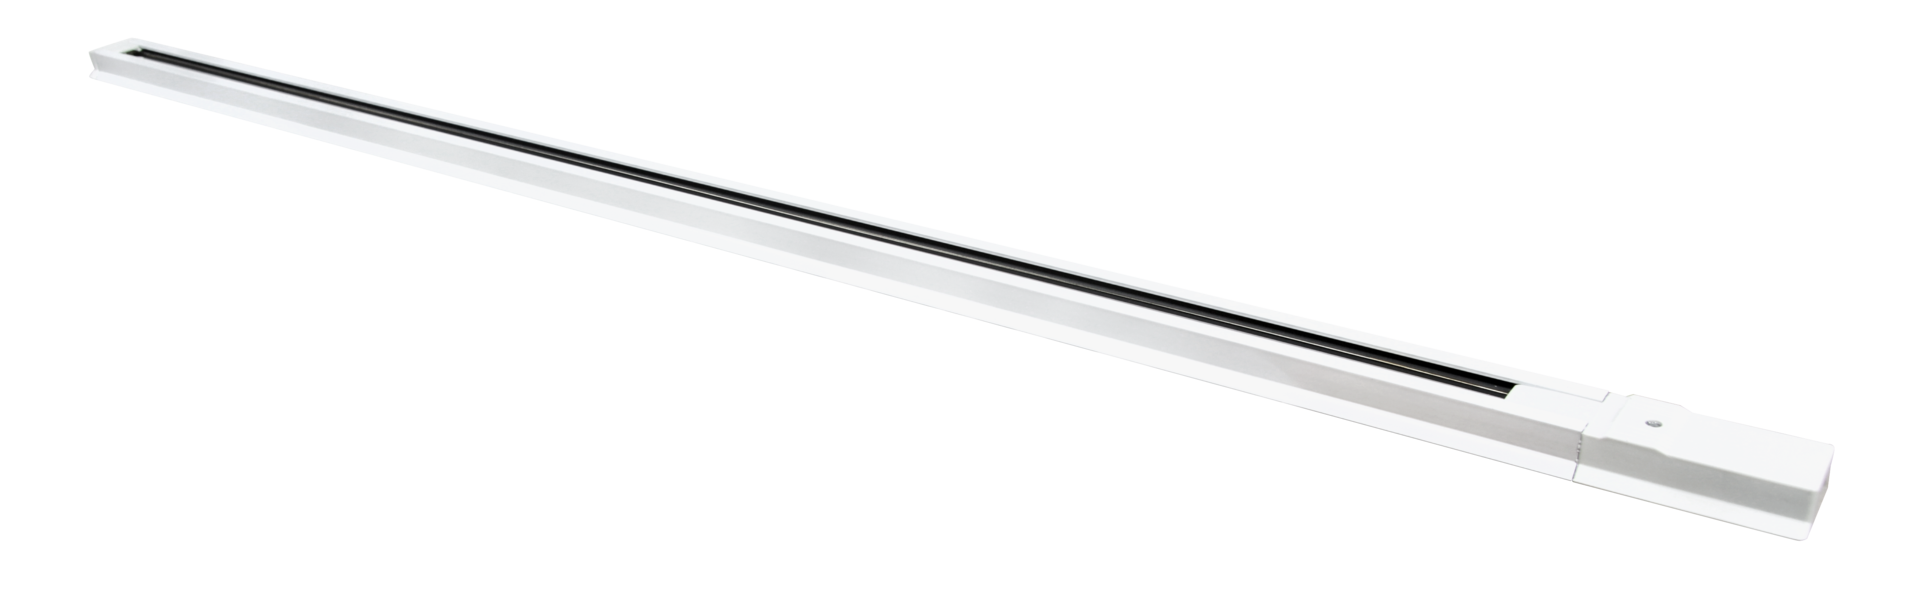 1-phasen LED Stromschiene Weiß, LED Schienensystem